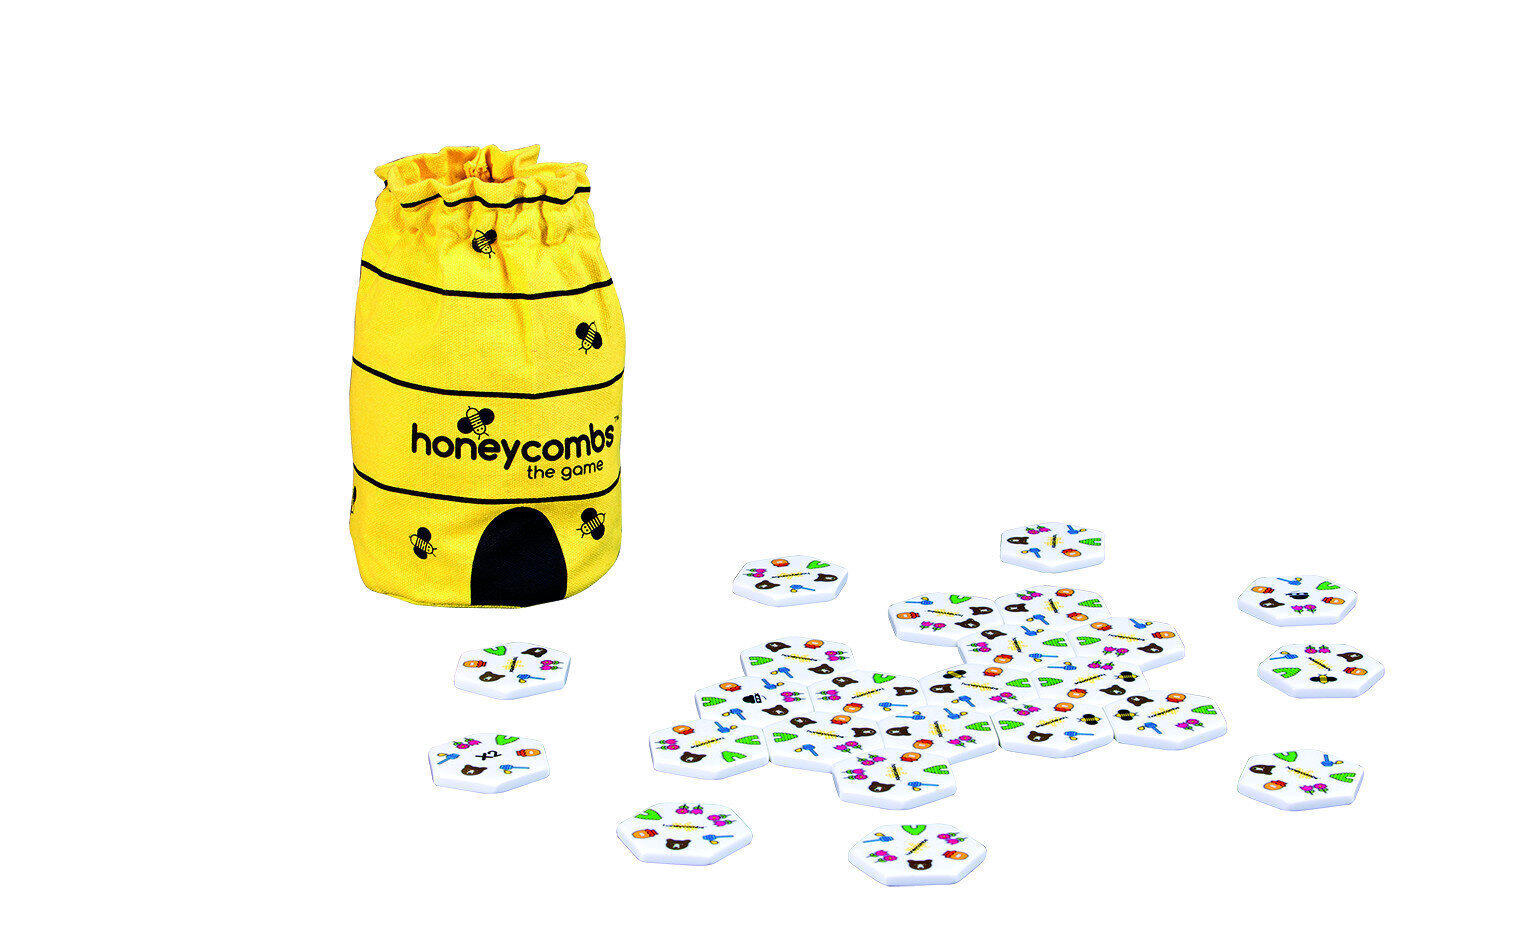 Galda spēle Honeycomb Piatnik EST, LV, LT, RU cena un informācija | Galda spēles | 220.lv